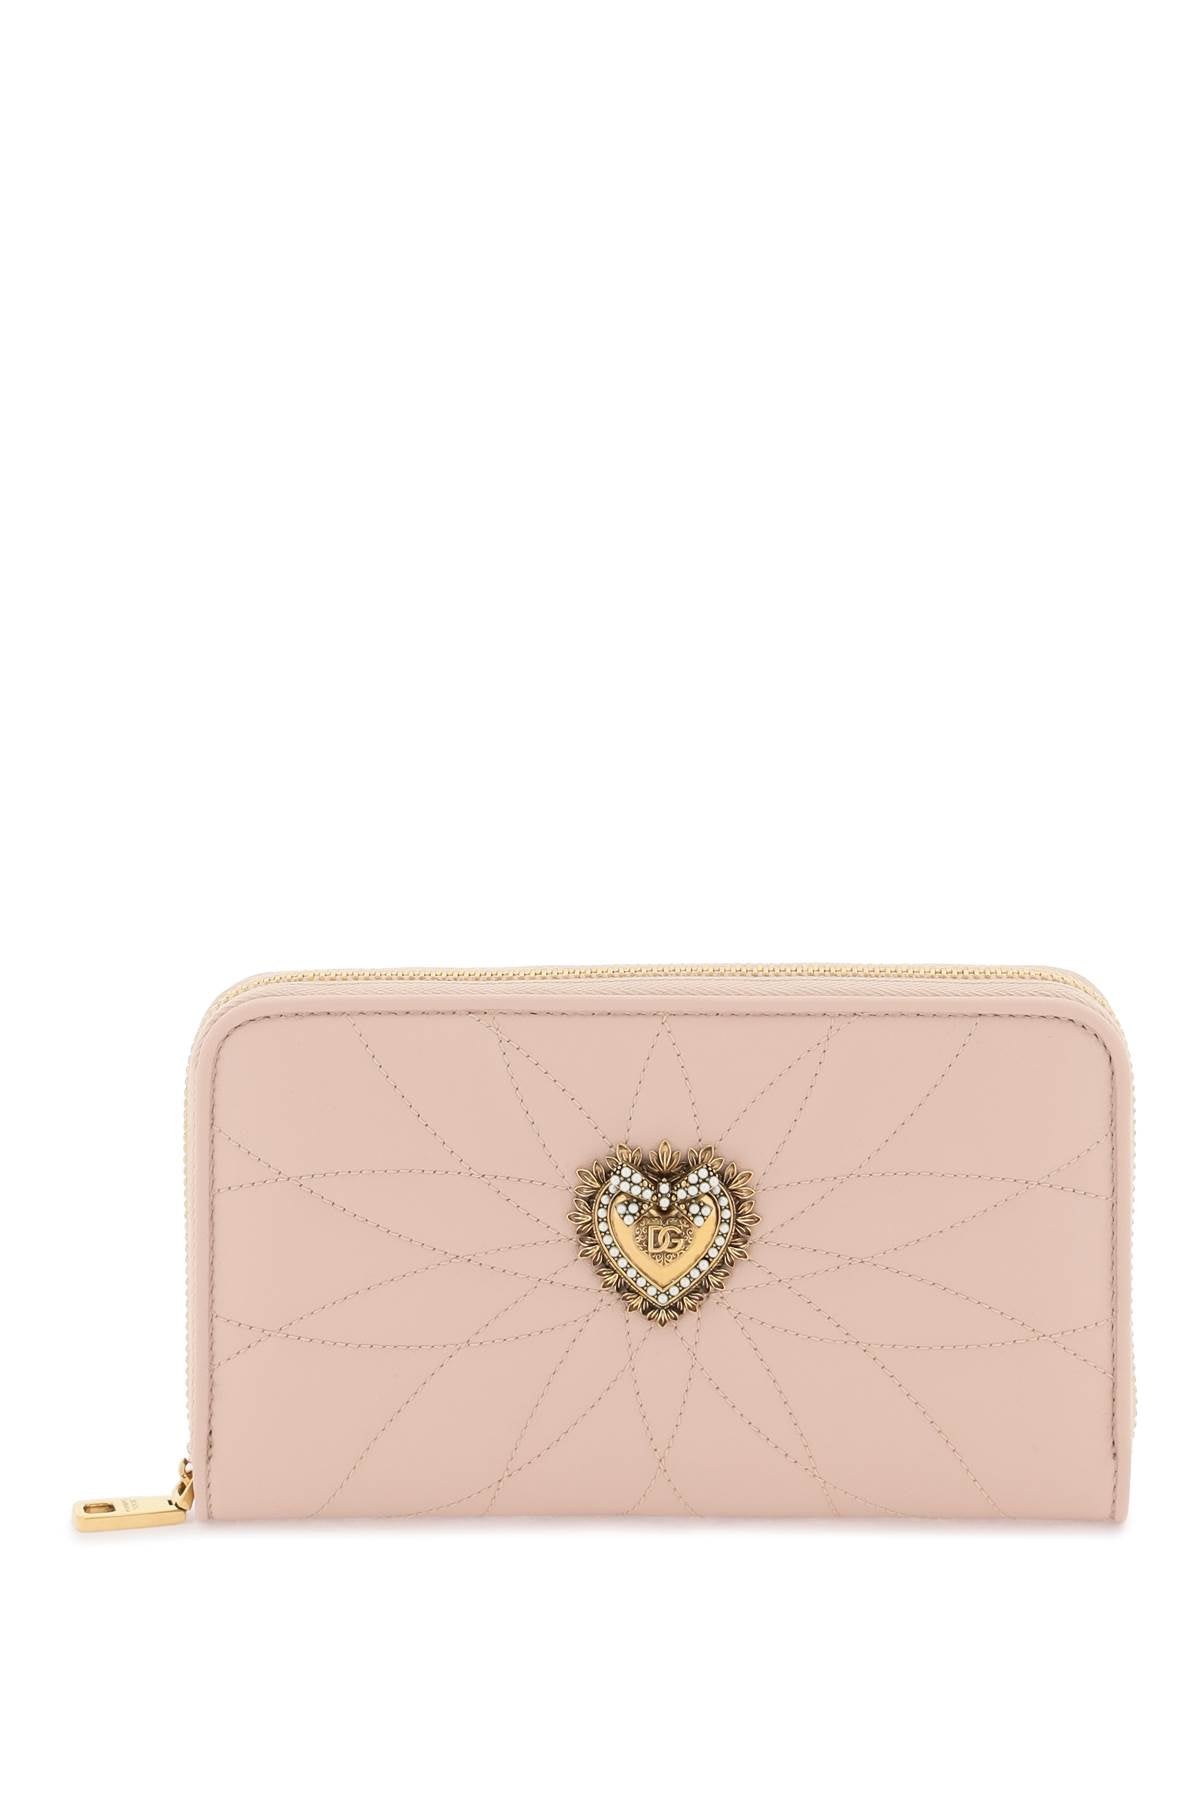 Dolce & Gabbana Devotion Zip Around Wallet   Pink